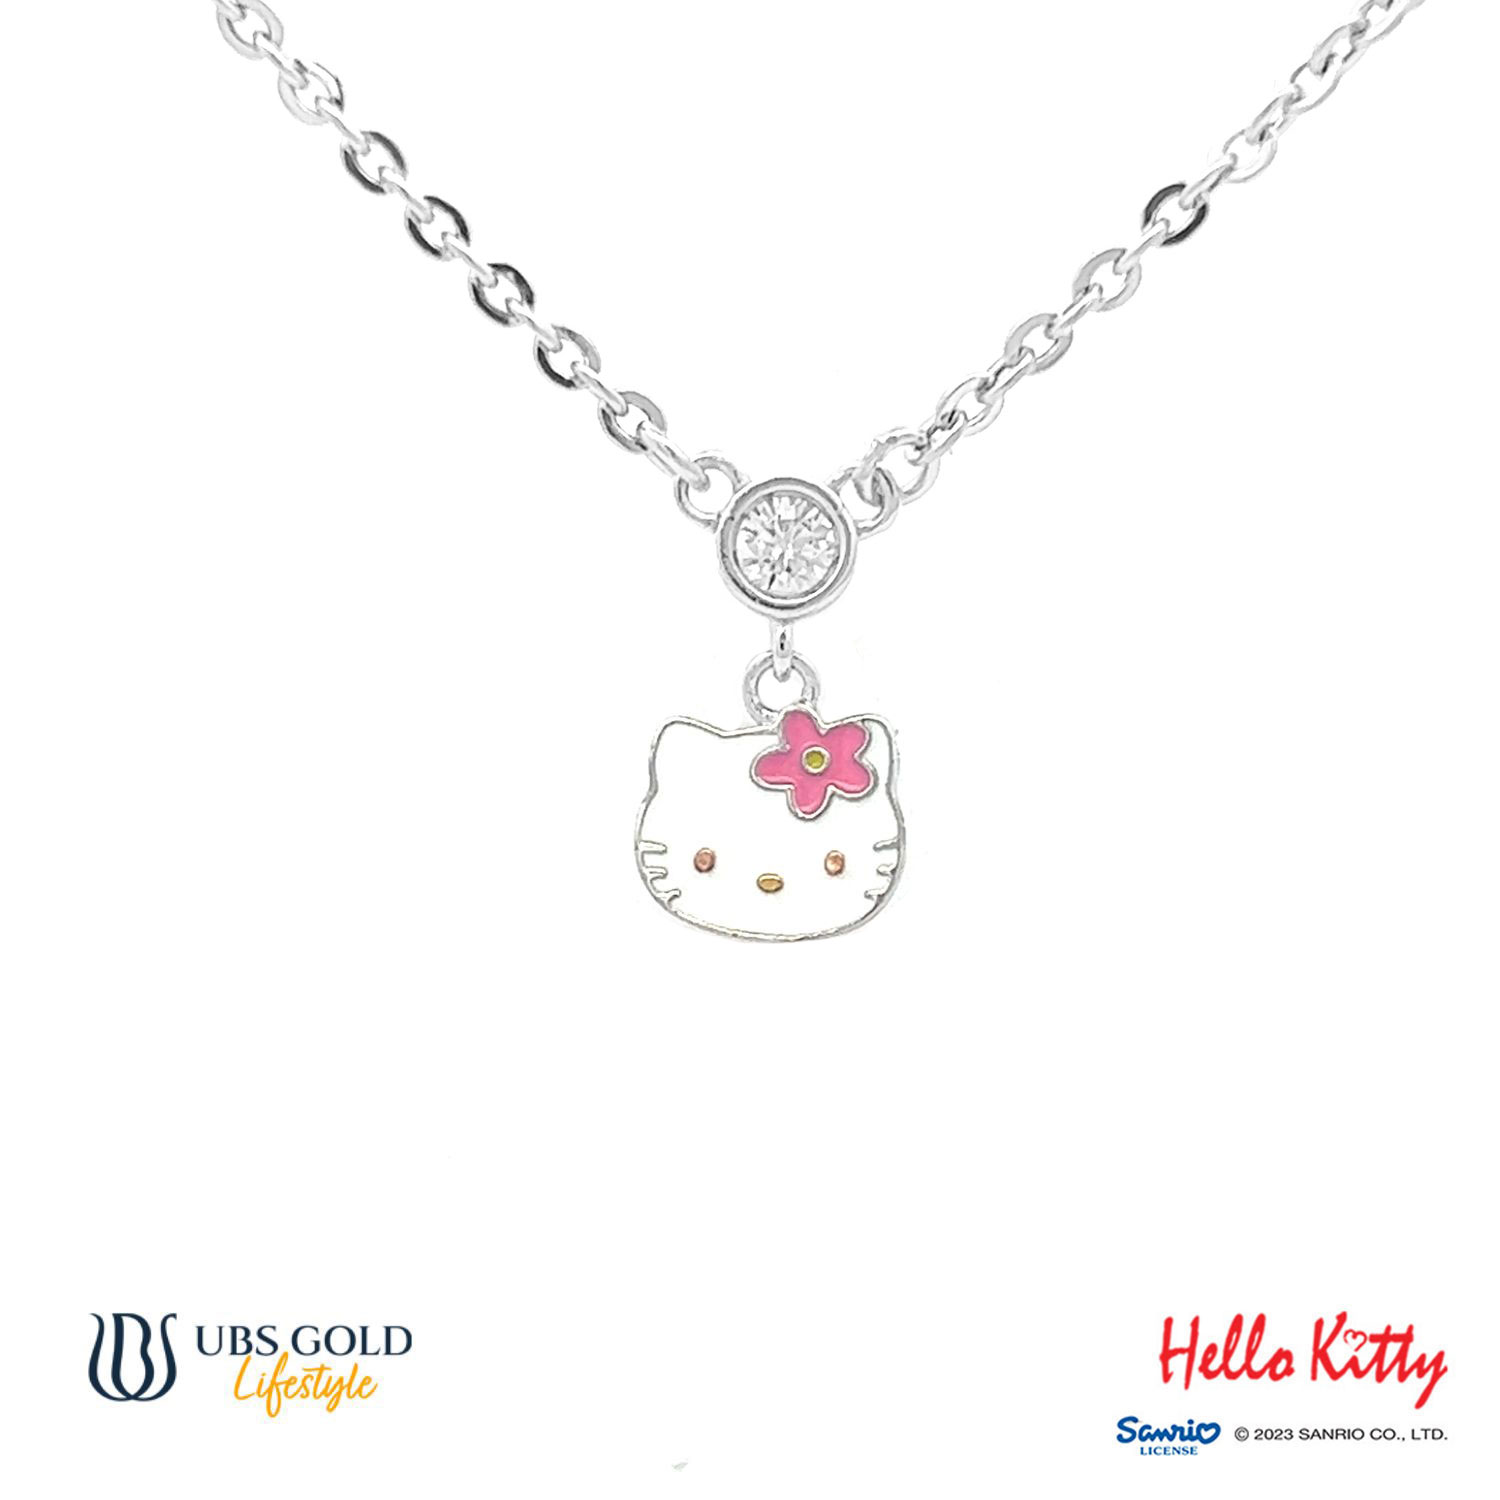 UBS Gold Kalung Emas Anak Sanrio Hello Kitty - Hkz0023 - 17K